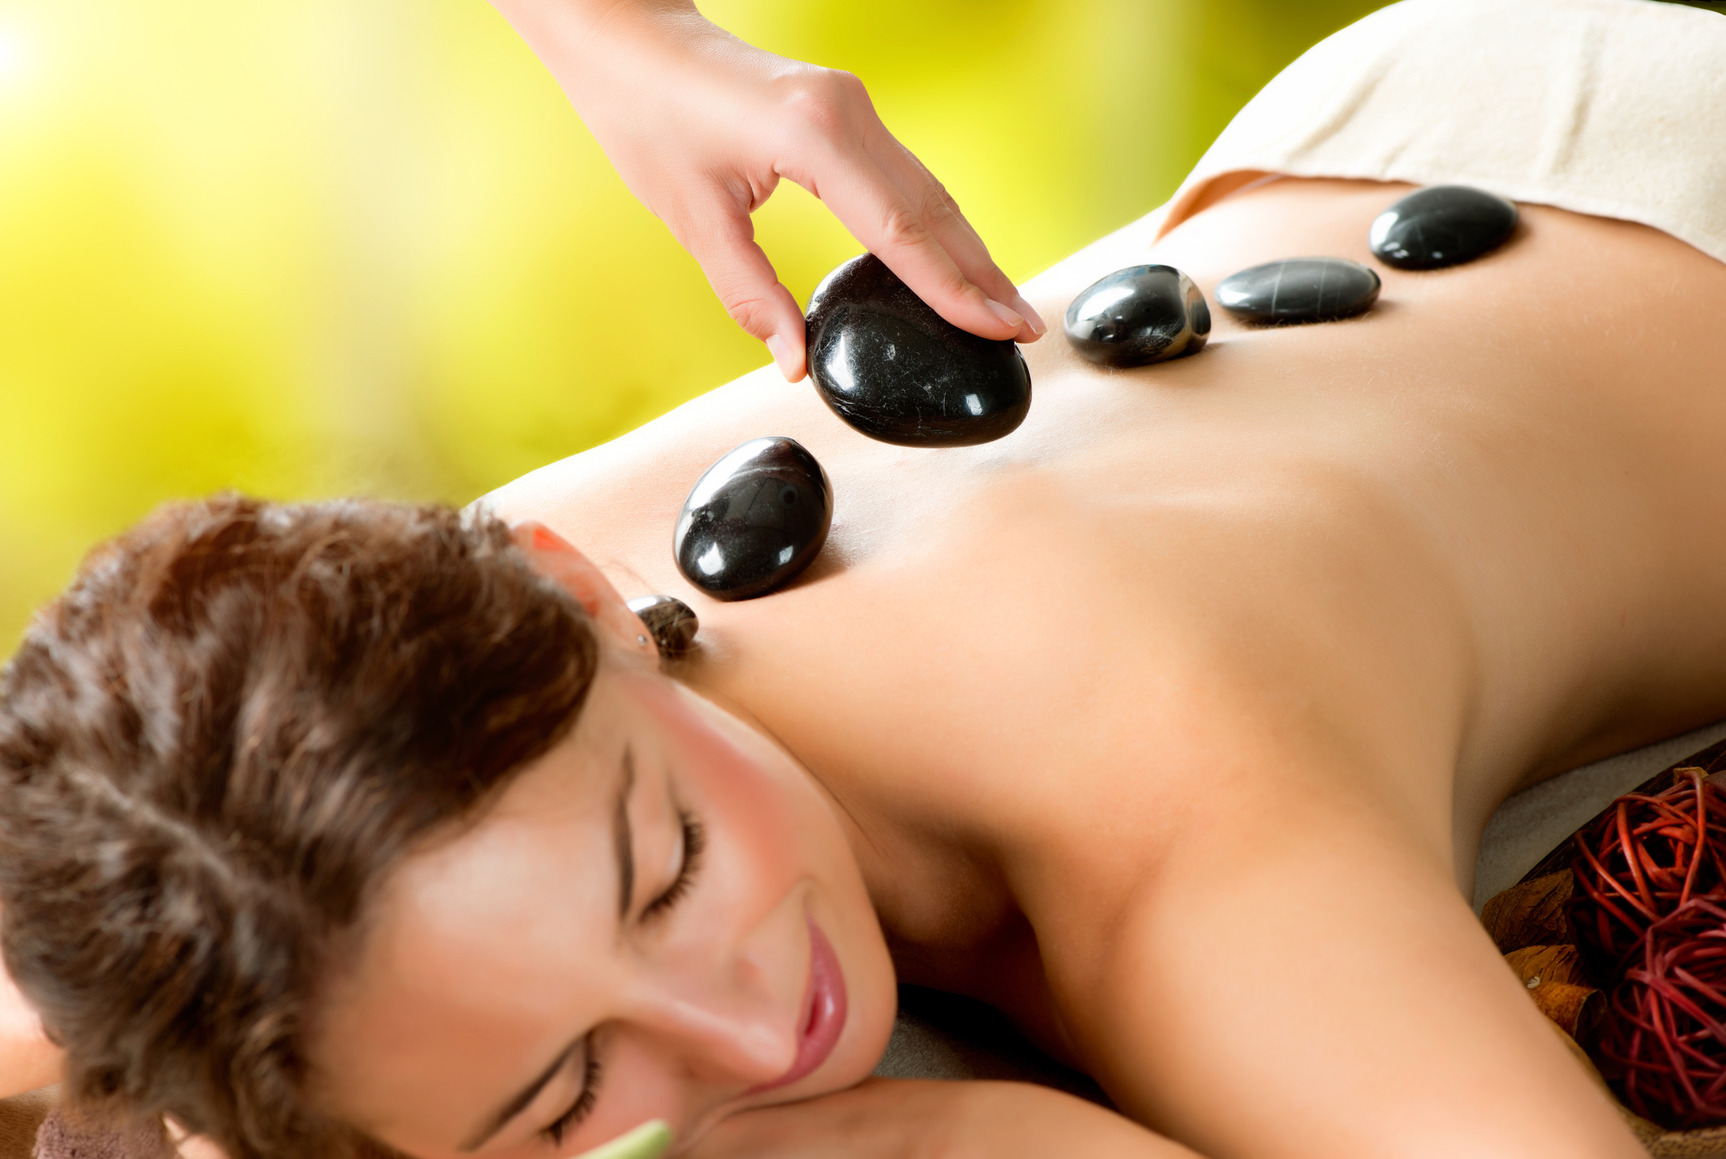 First massage. Стоунтерапия. Спа массаж. Спа камни для массажа. Стоунтерапия массаж.